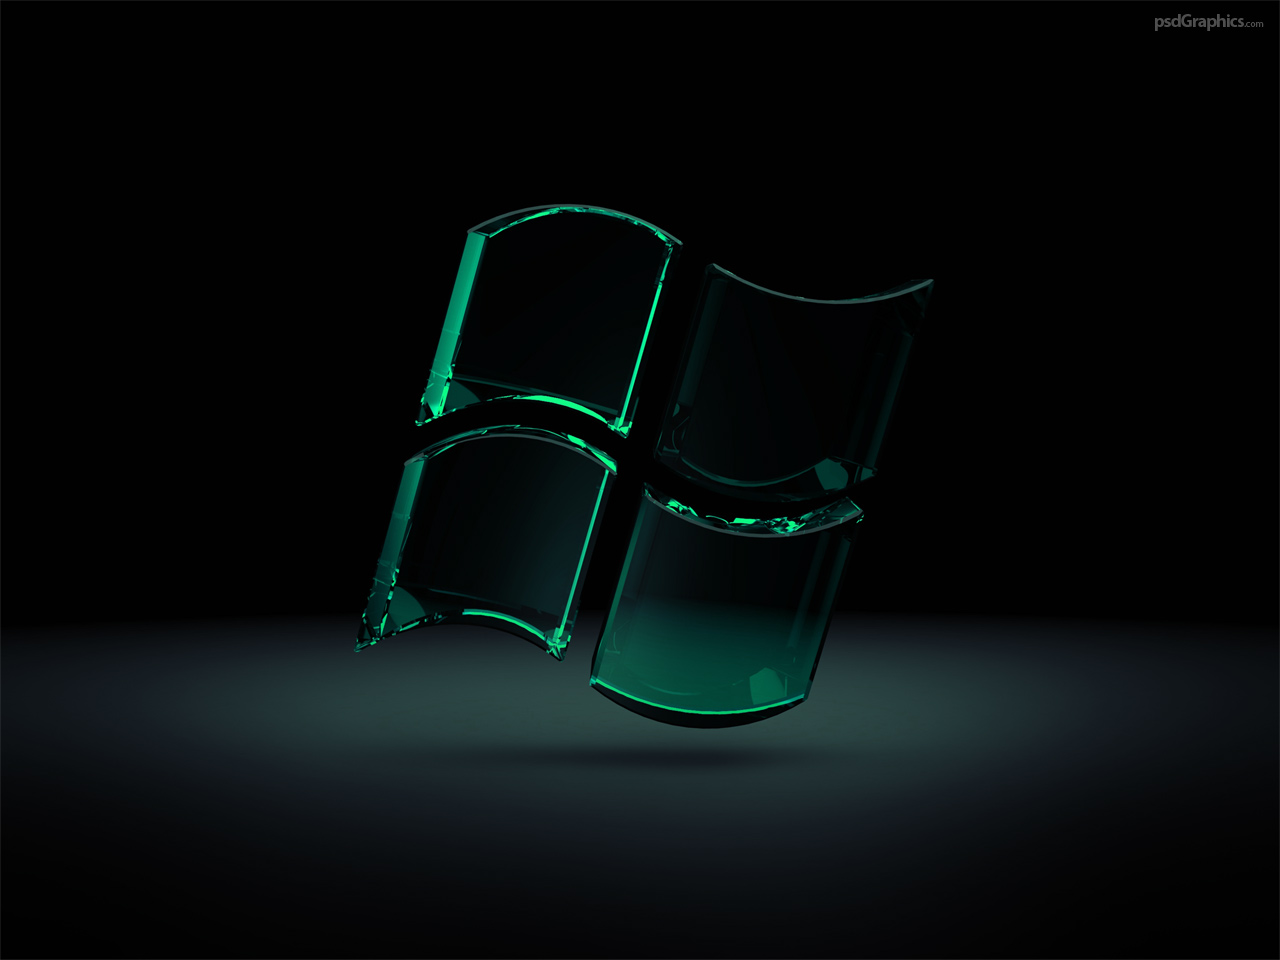 sd fond d'écran hd,vert,matériau transparent,photographie de nature morte,chaise,verre